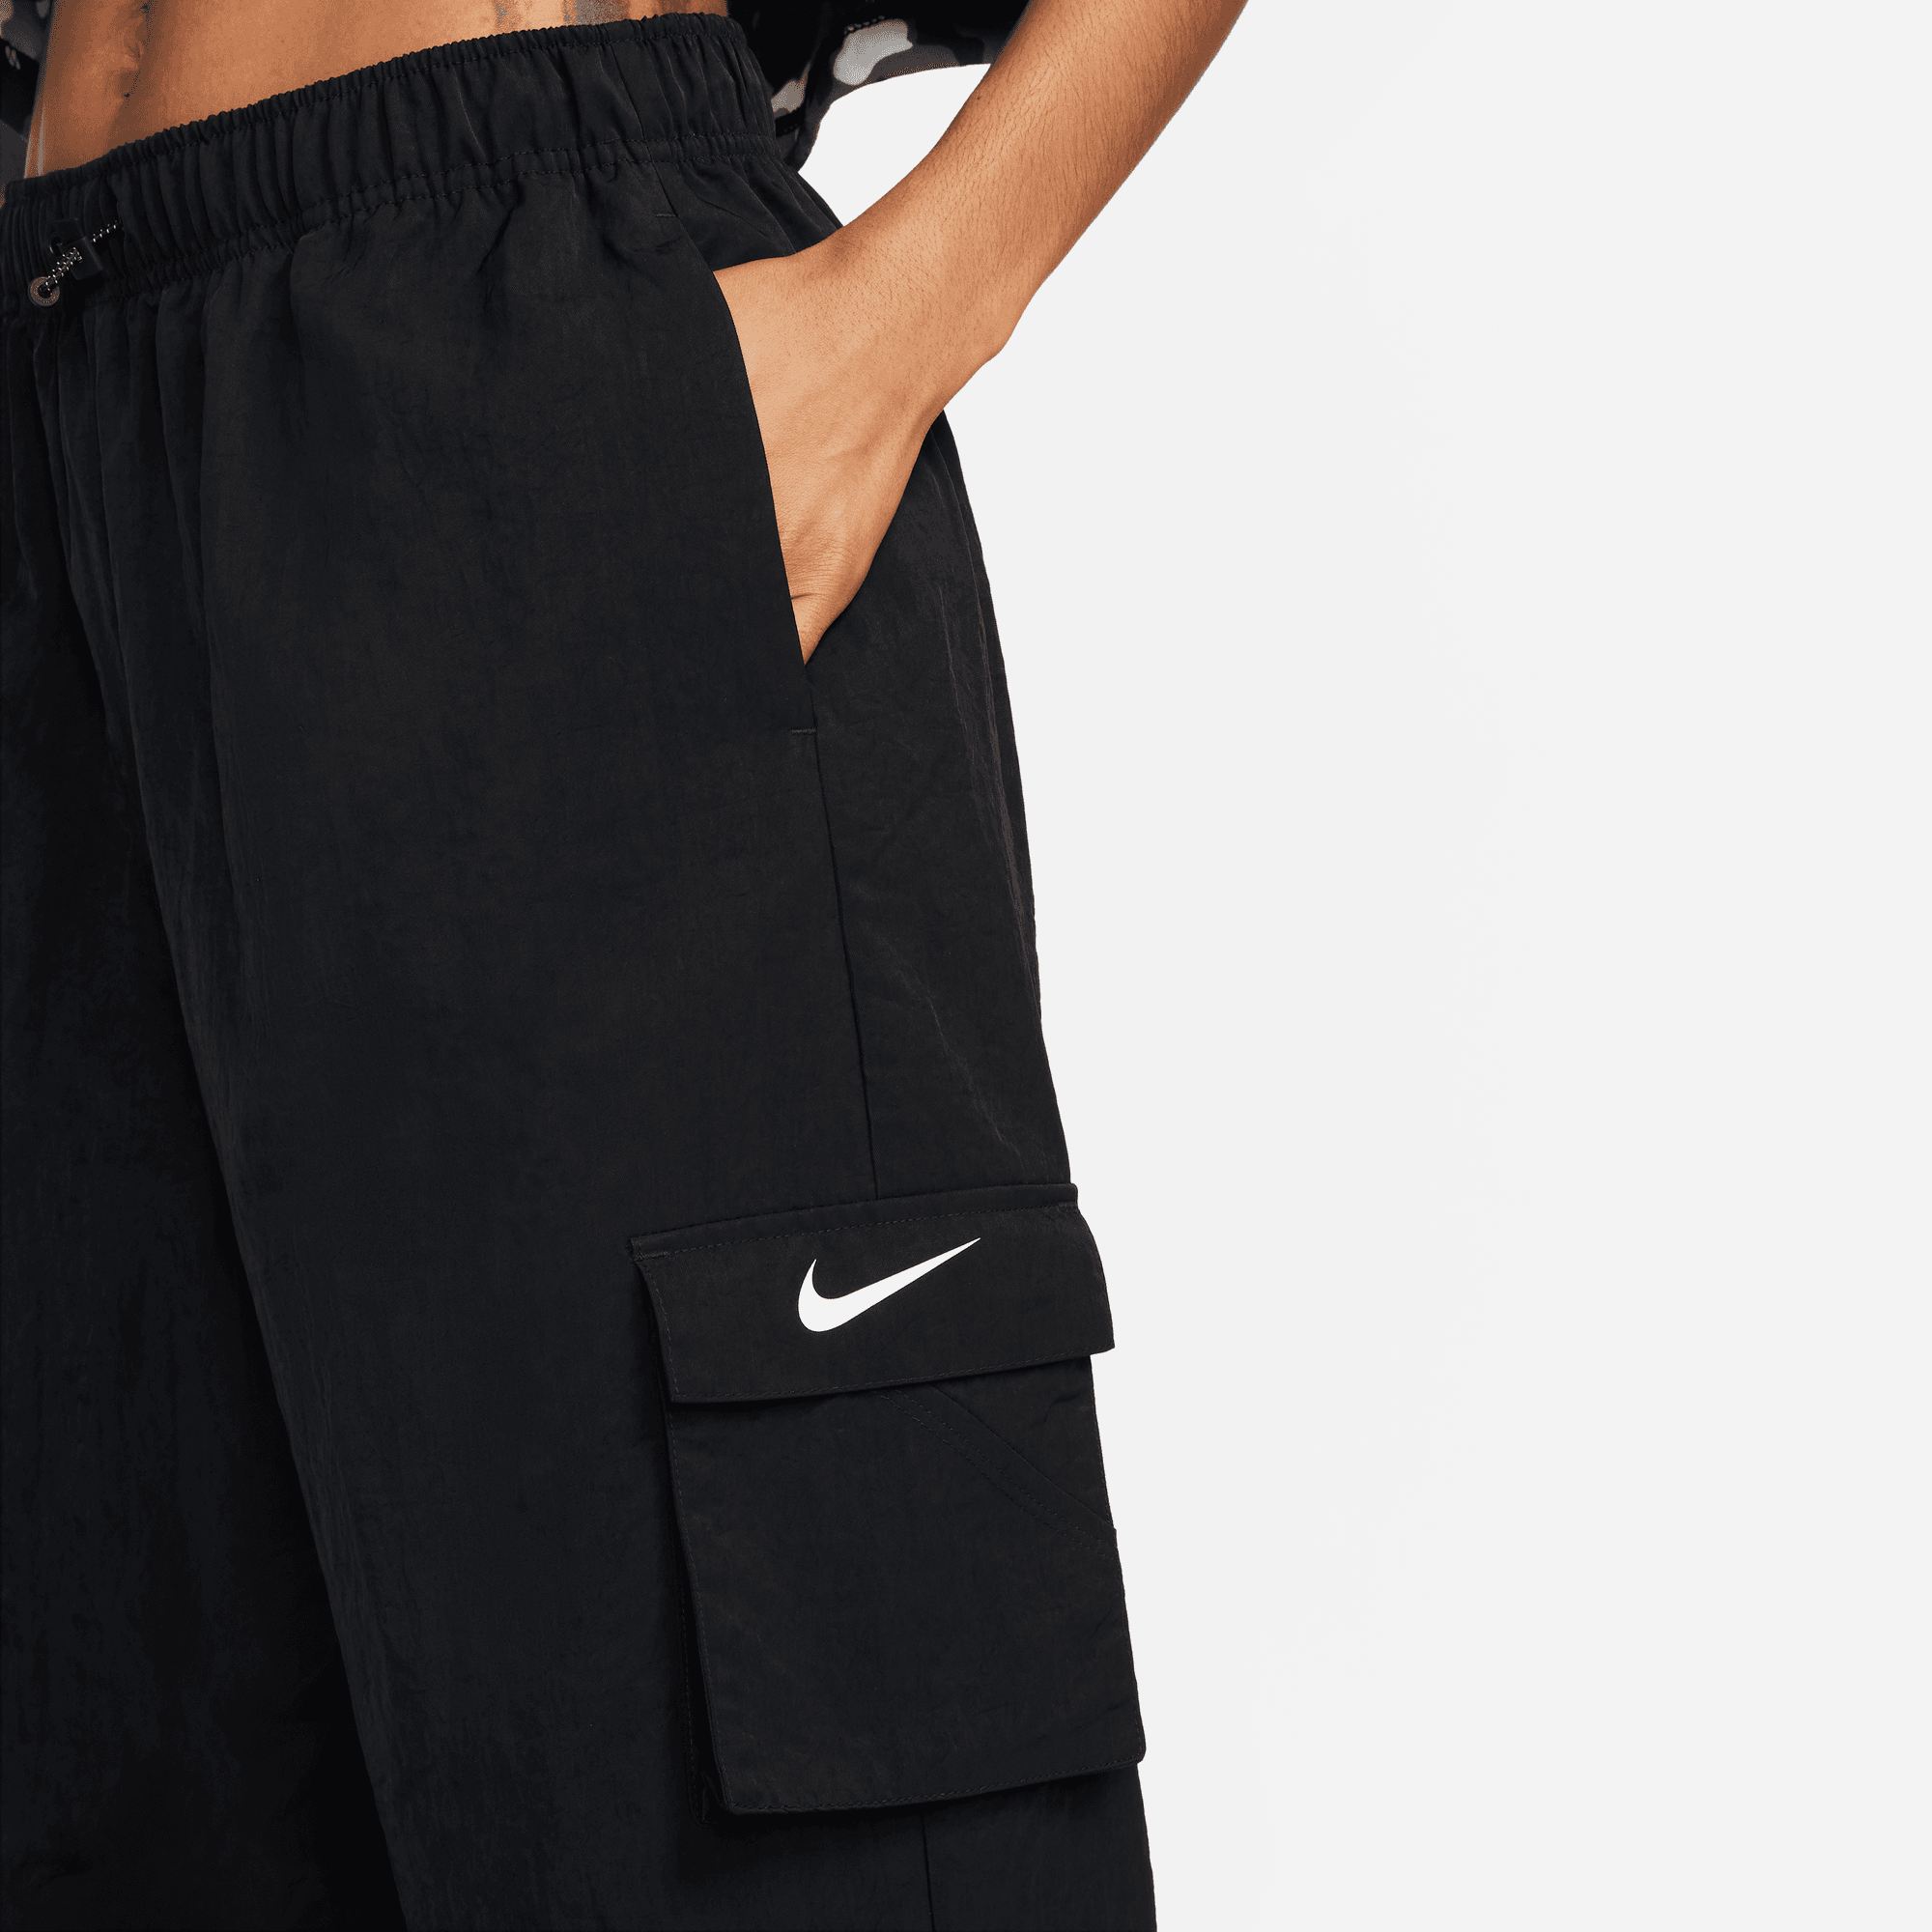 Nike Sportswear Women's Woven Cargo Pants.